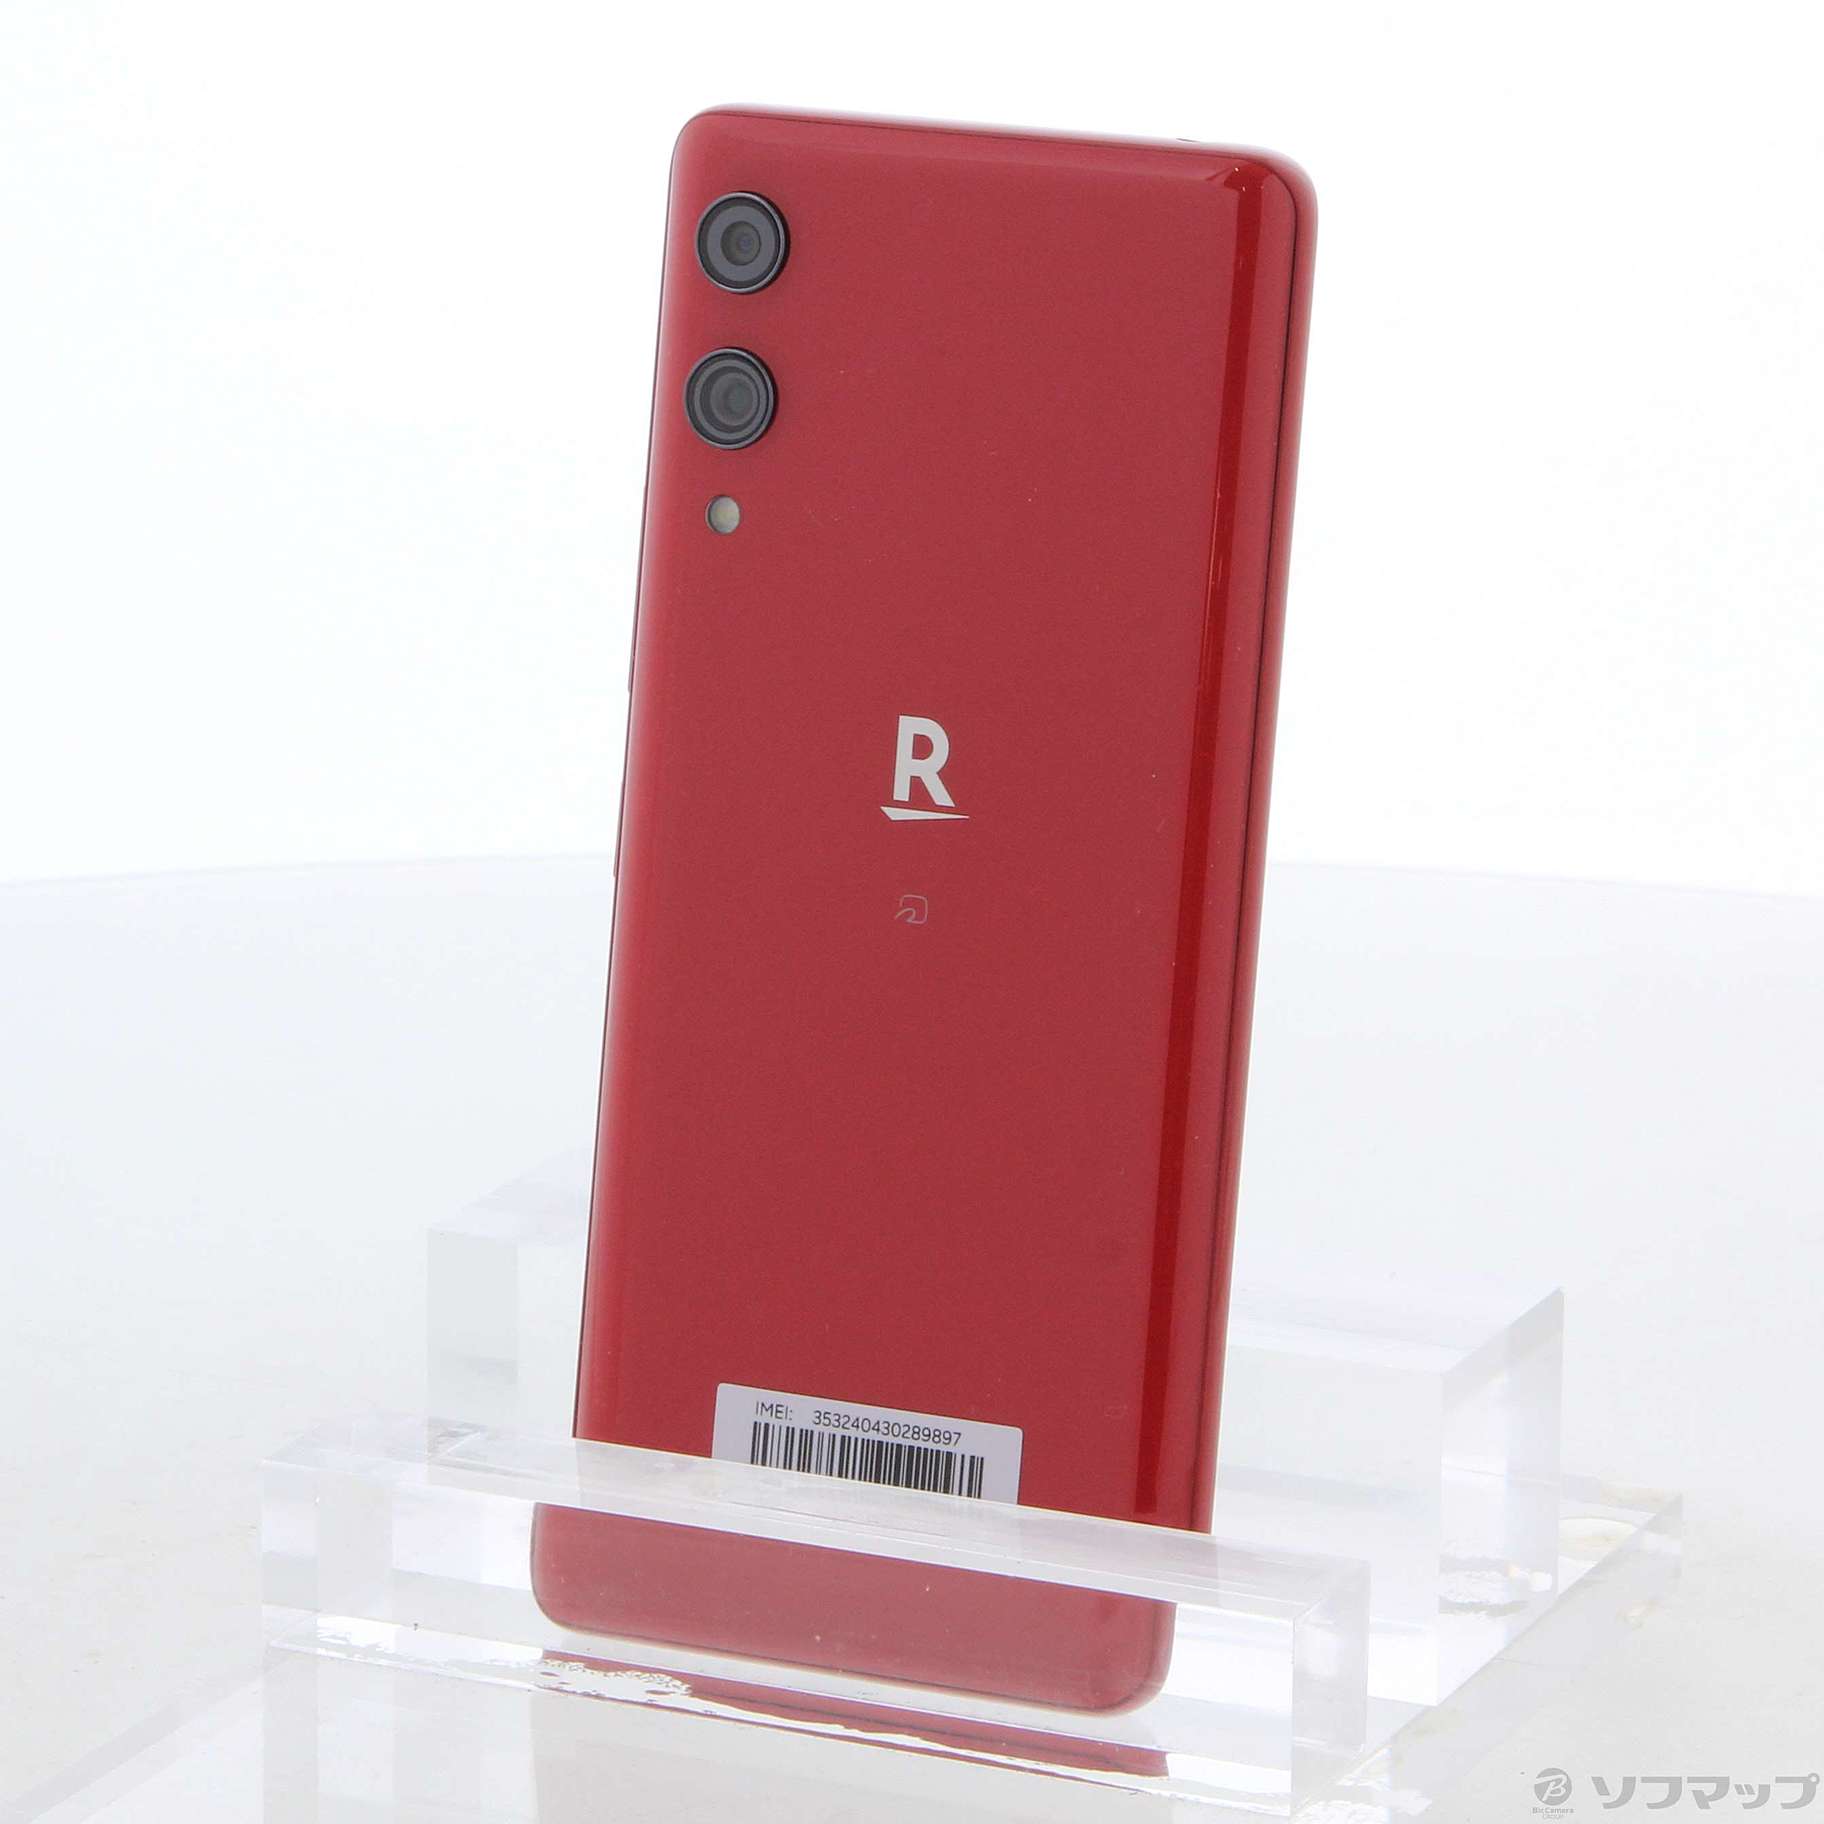 Rakuten Hand P710 Crimson Red SIMフリー